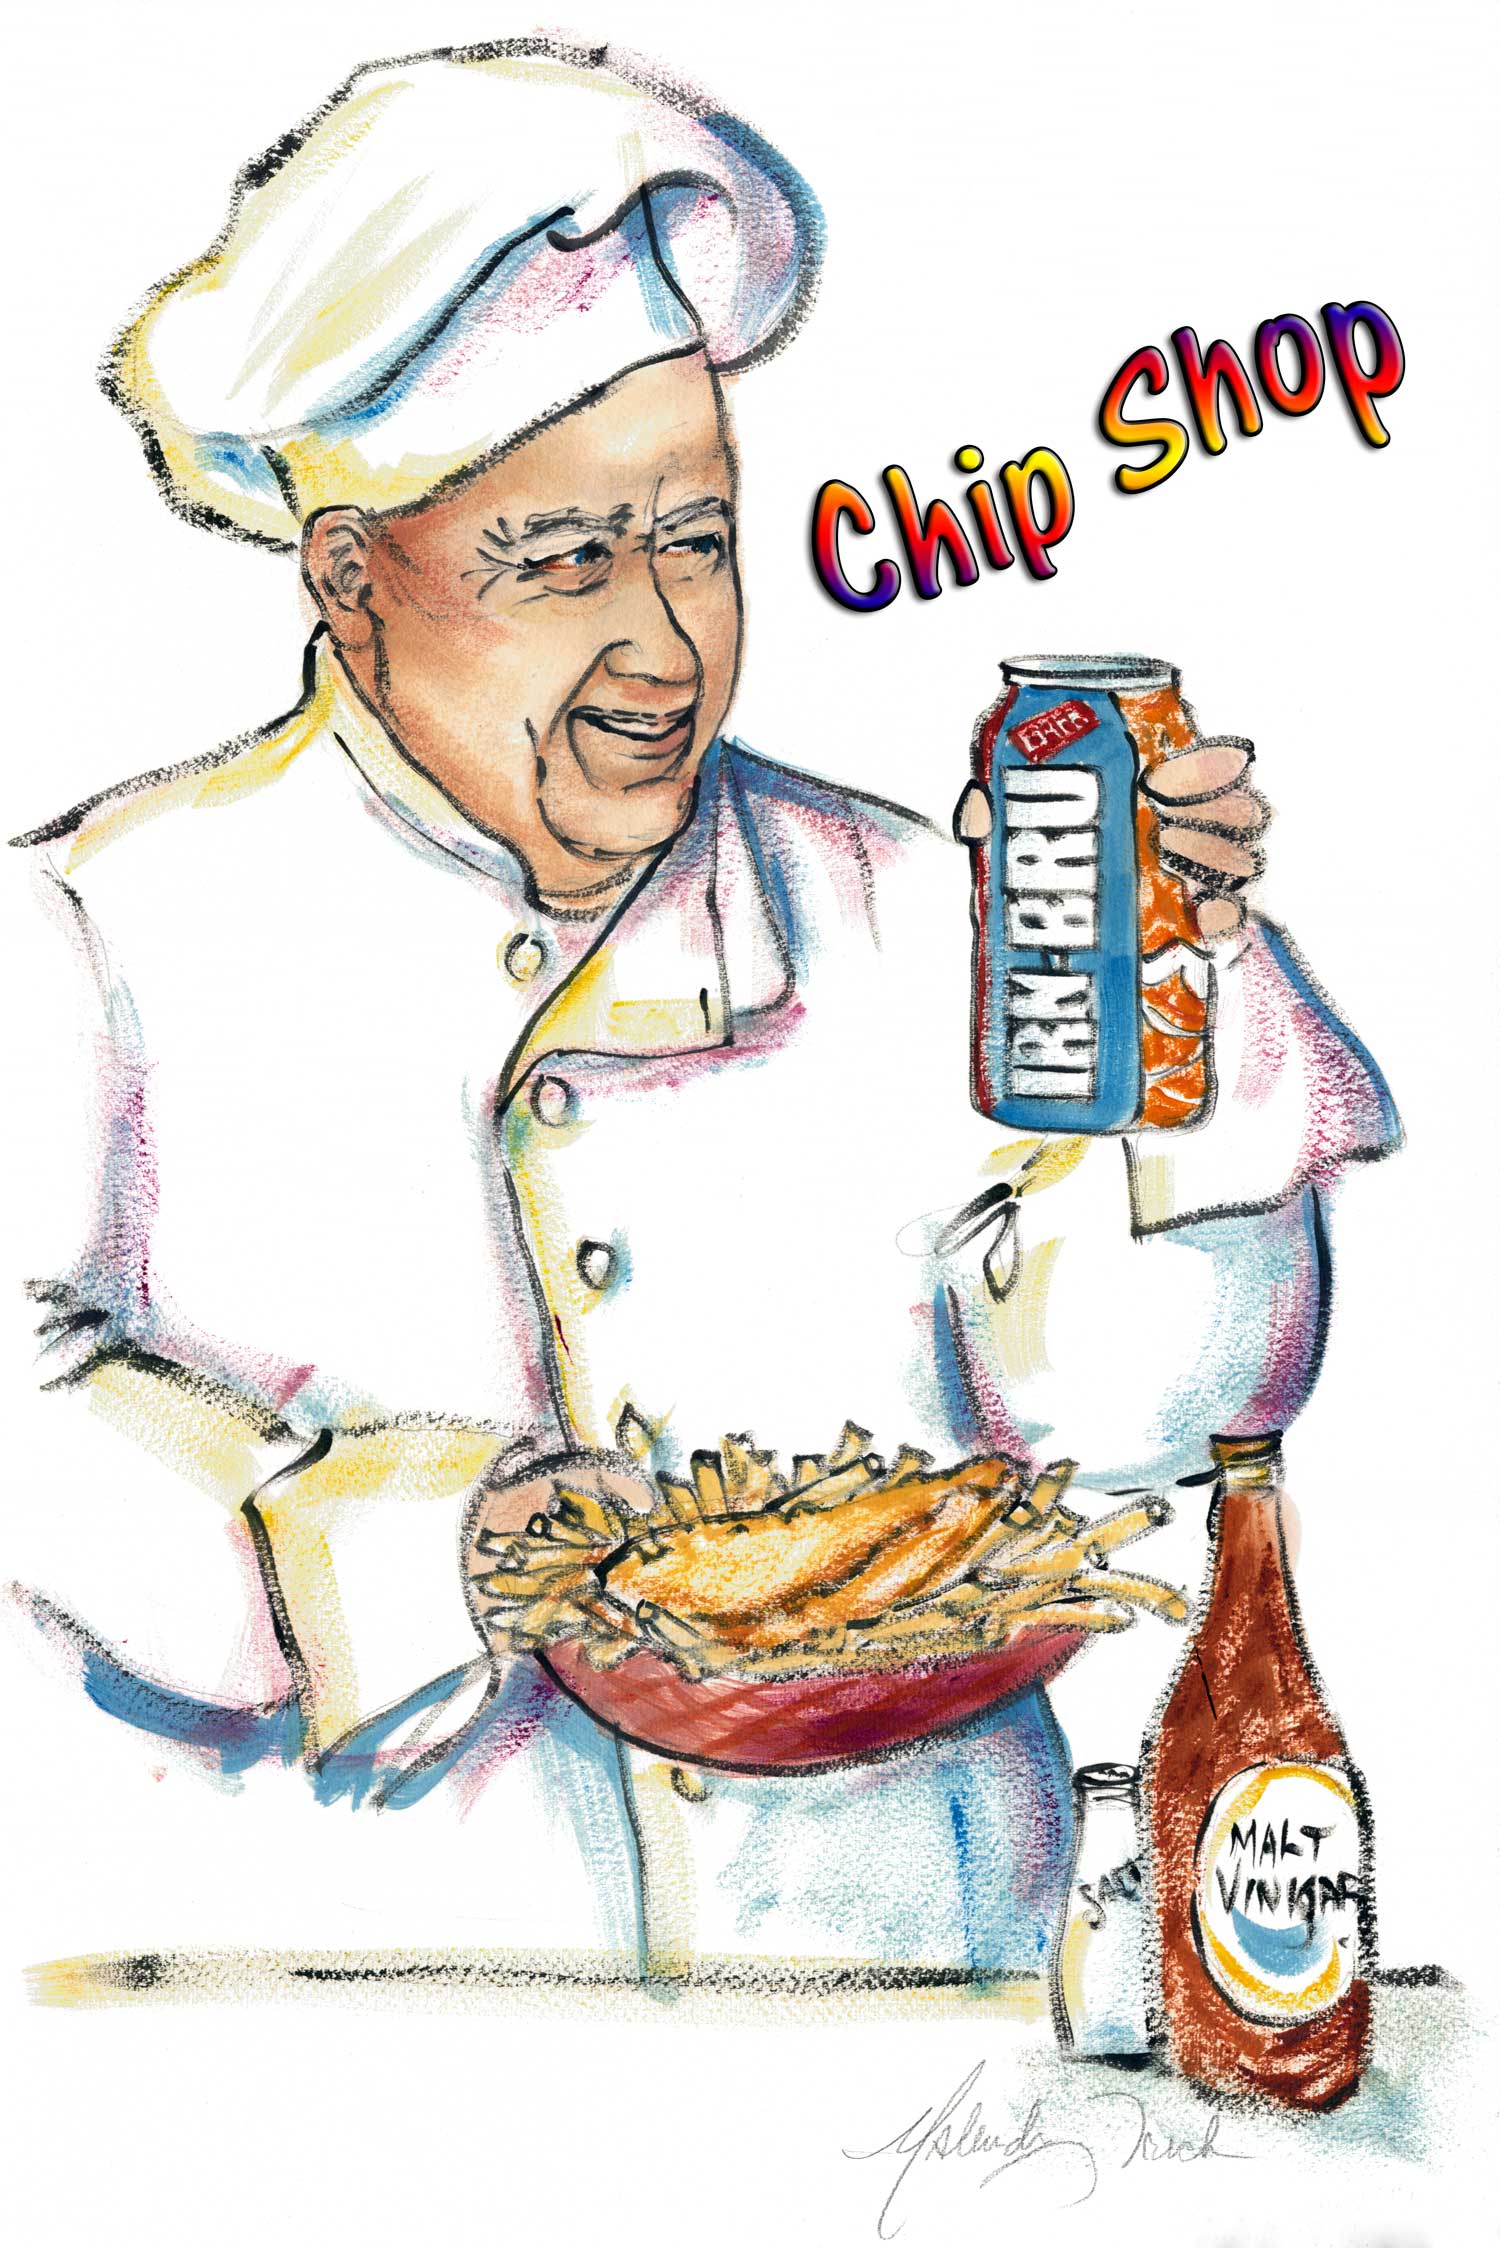 Chip-Shop